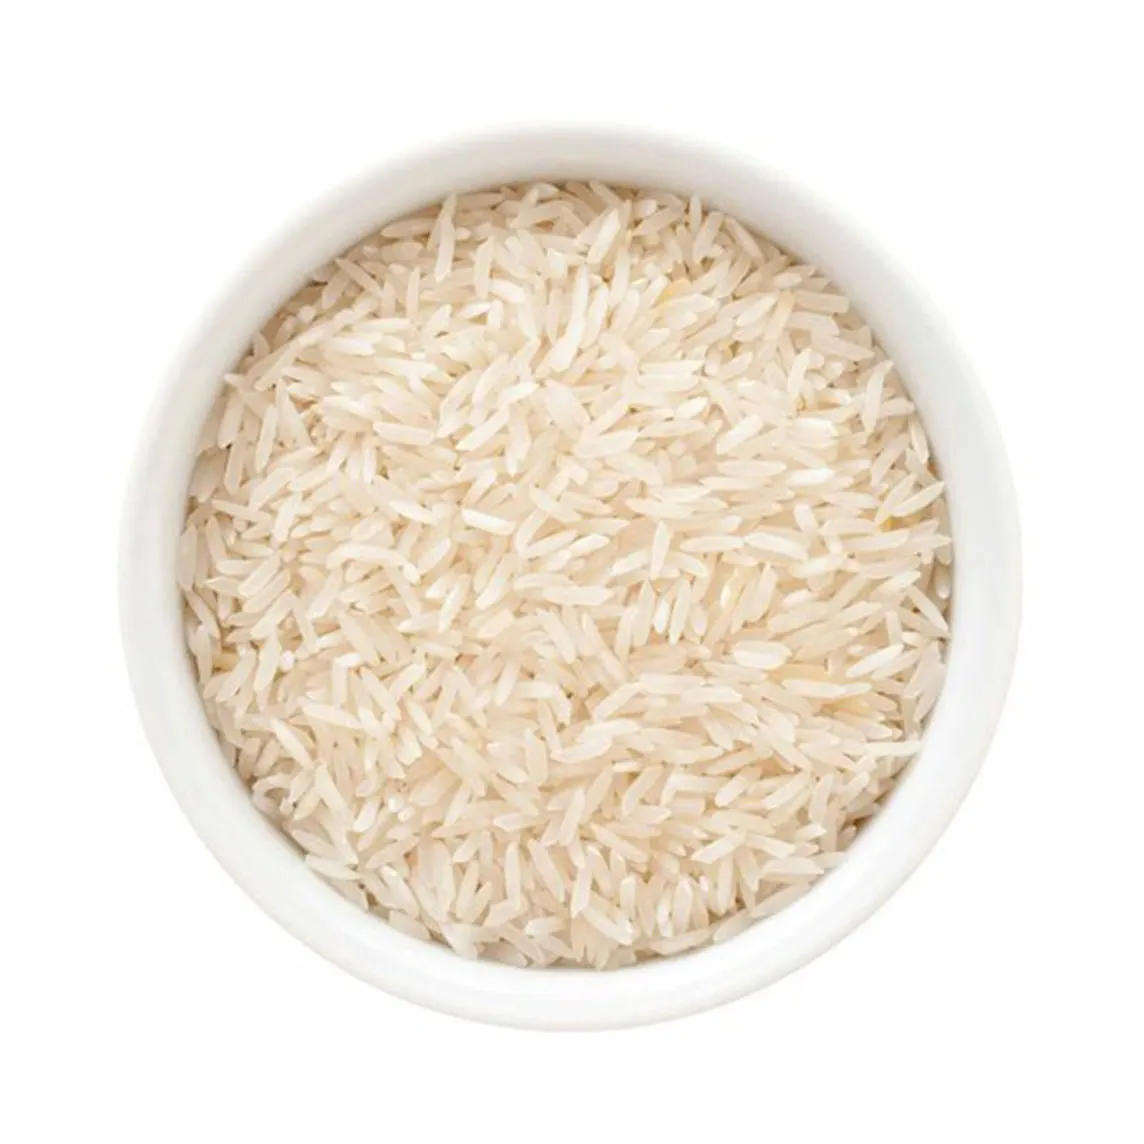 יצואן של אורז גרגר ארוך Irri-6 15%, 20%, 25% 30% עד 100% אורז שבור כמו גם אורז בסמטי-385, מחיר אורז סופר בסמטי